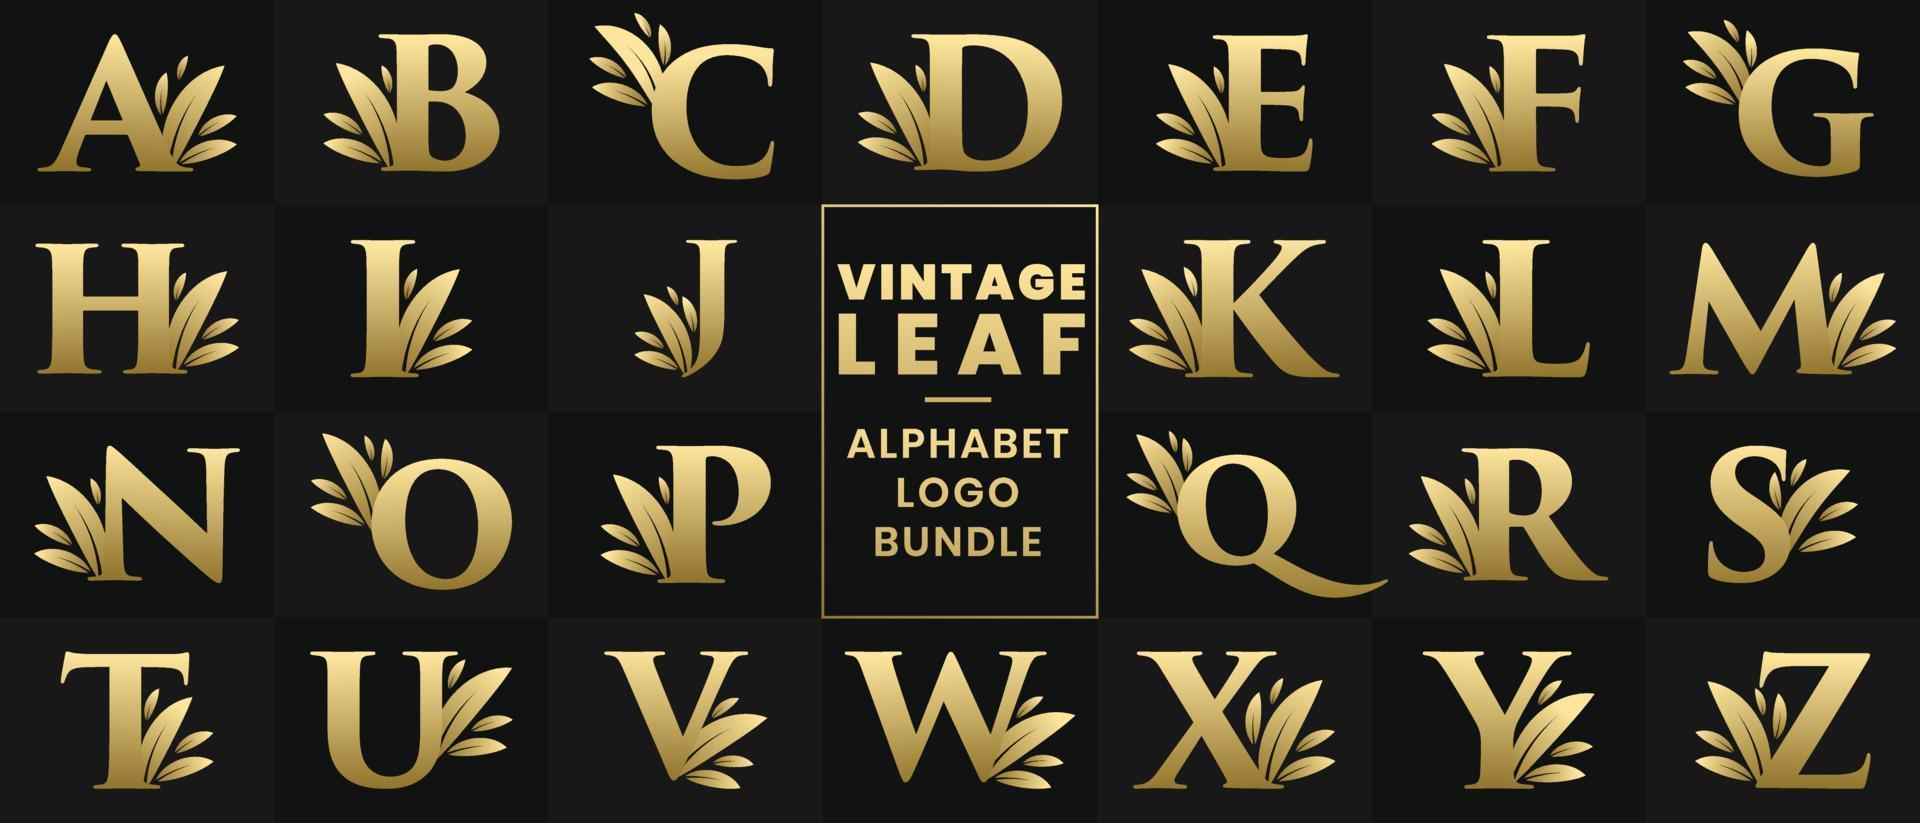 Vintage Leaf Alphabet logo bundle. Golden Retro Vintage Letter logo set A to Z vector